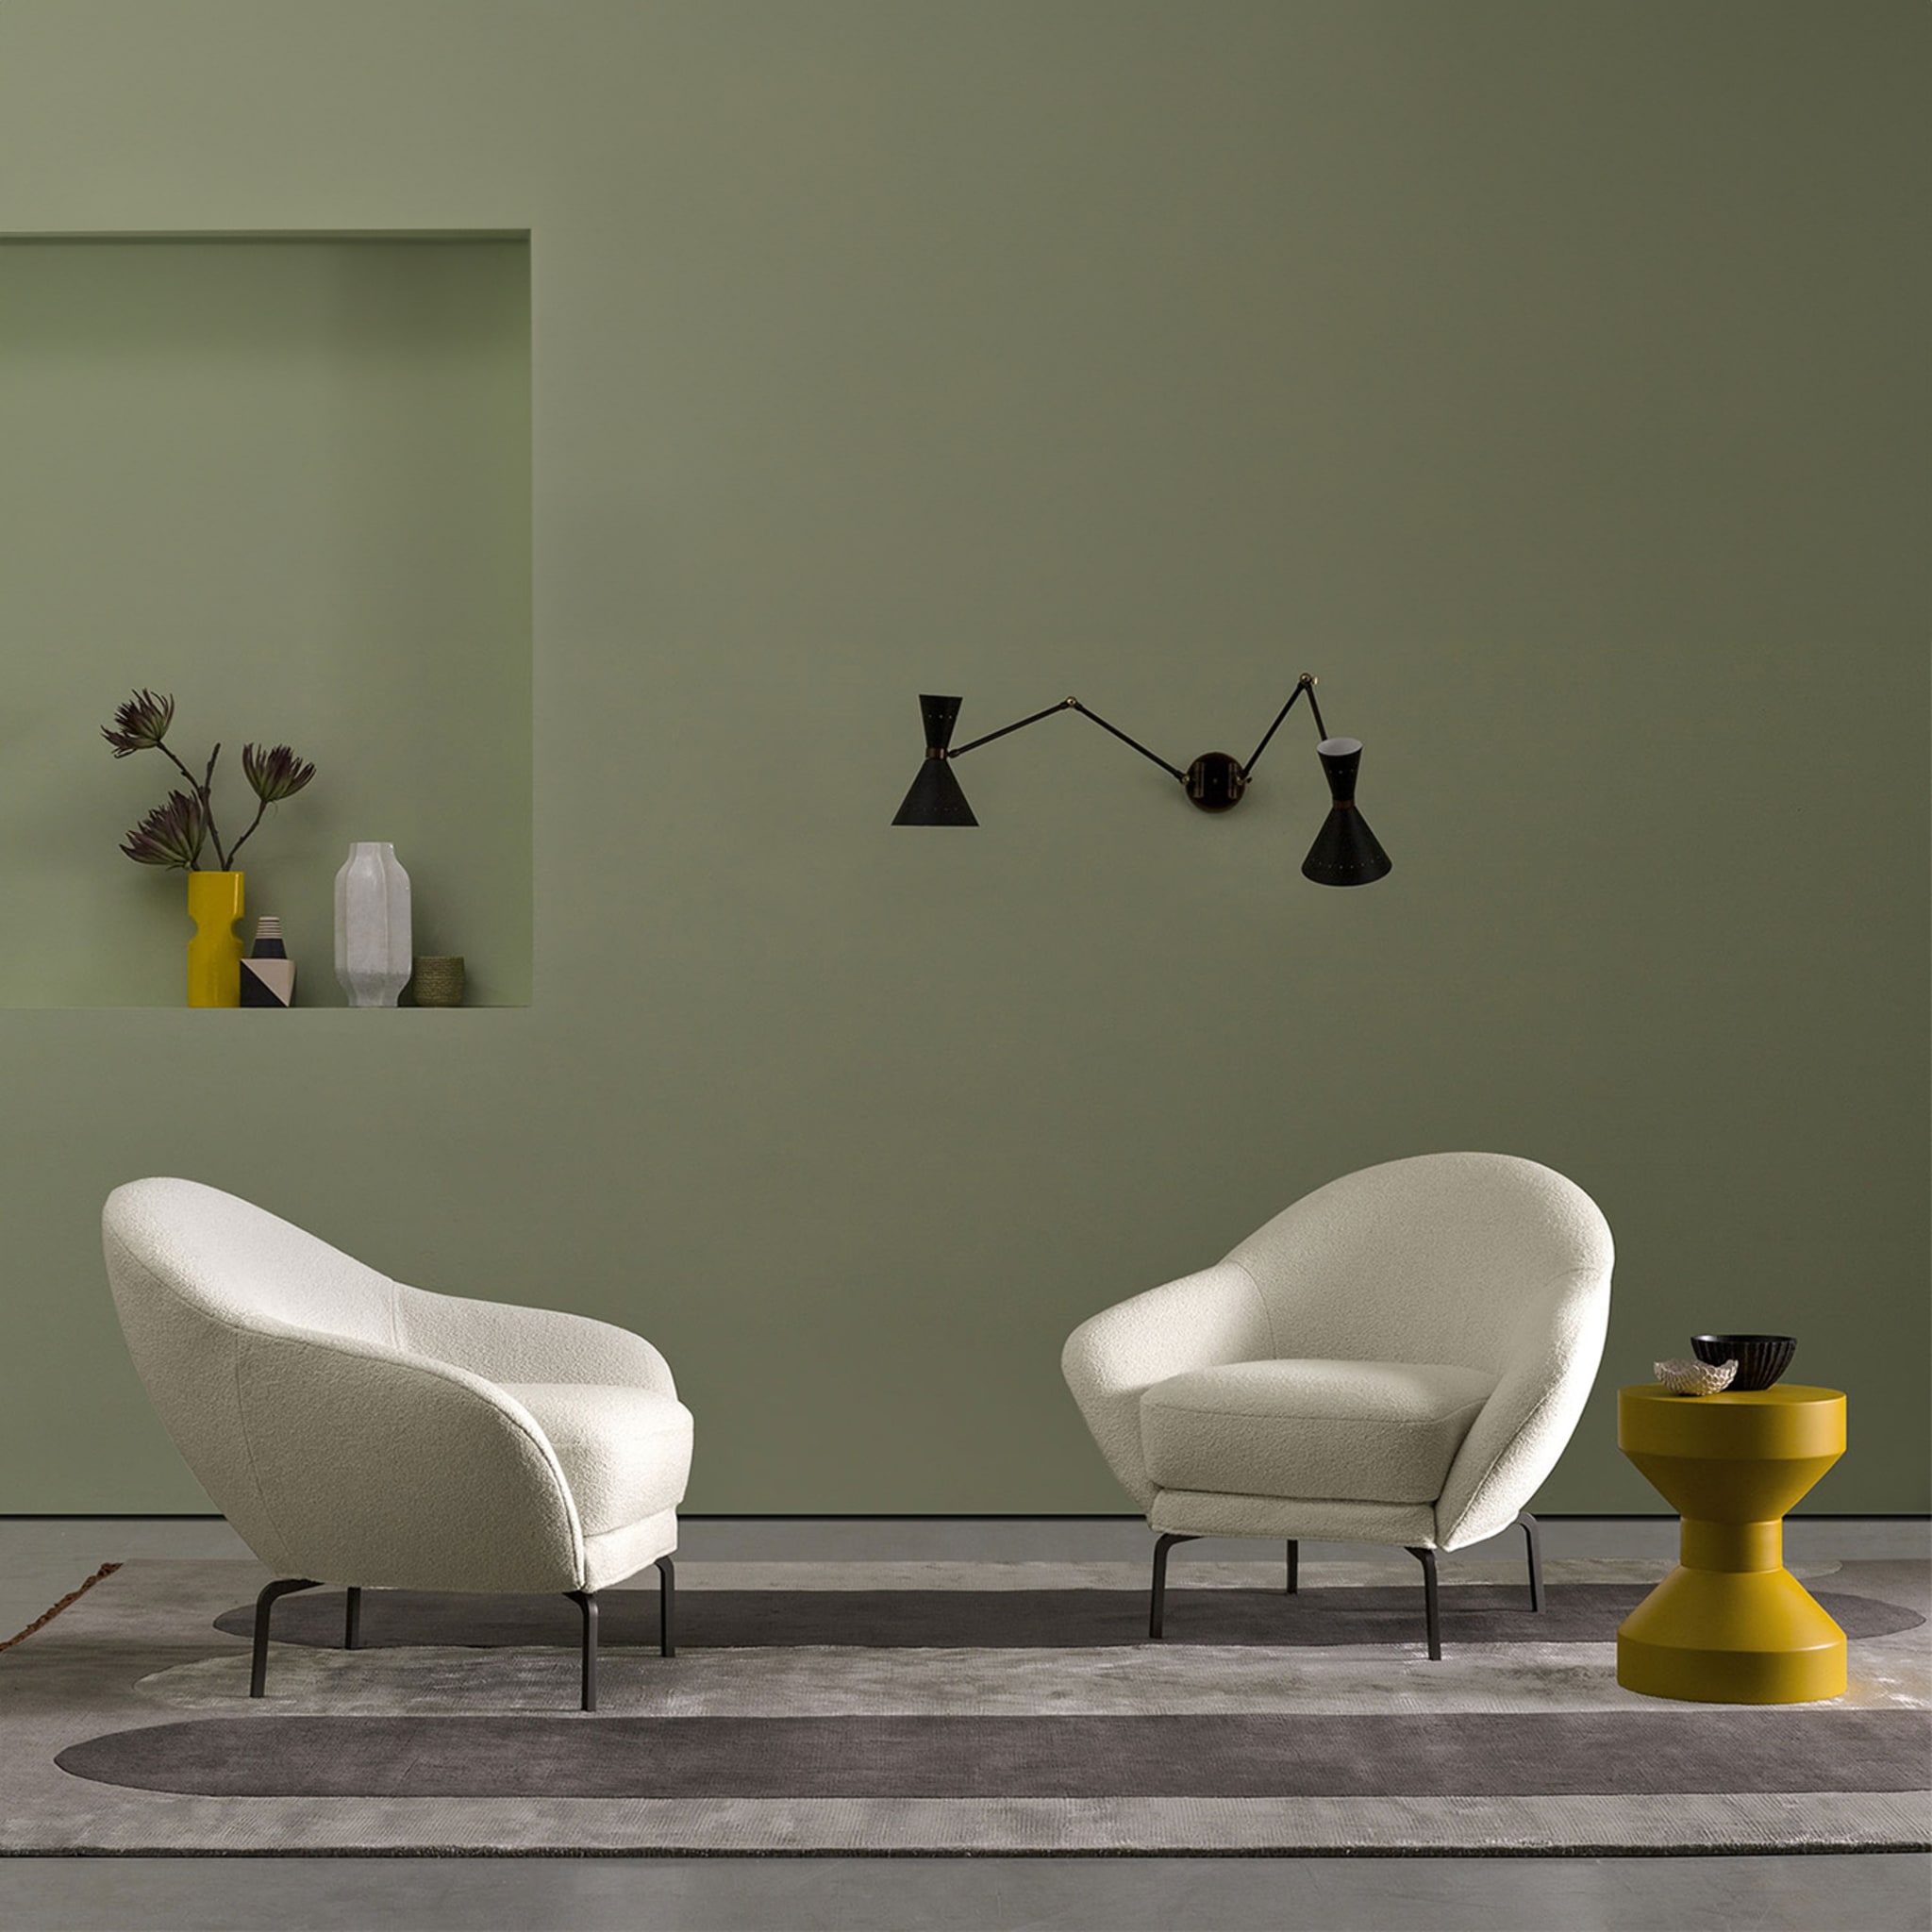 Giulia White Armchair by Giuseppe Manzoni - Alternative view 3